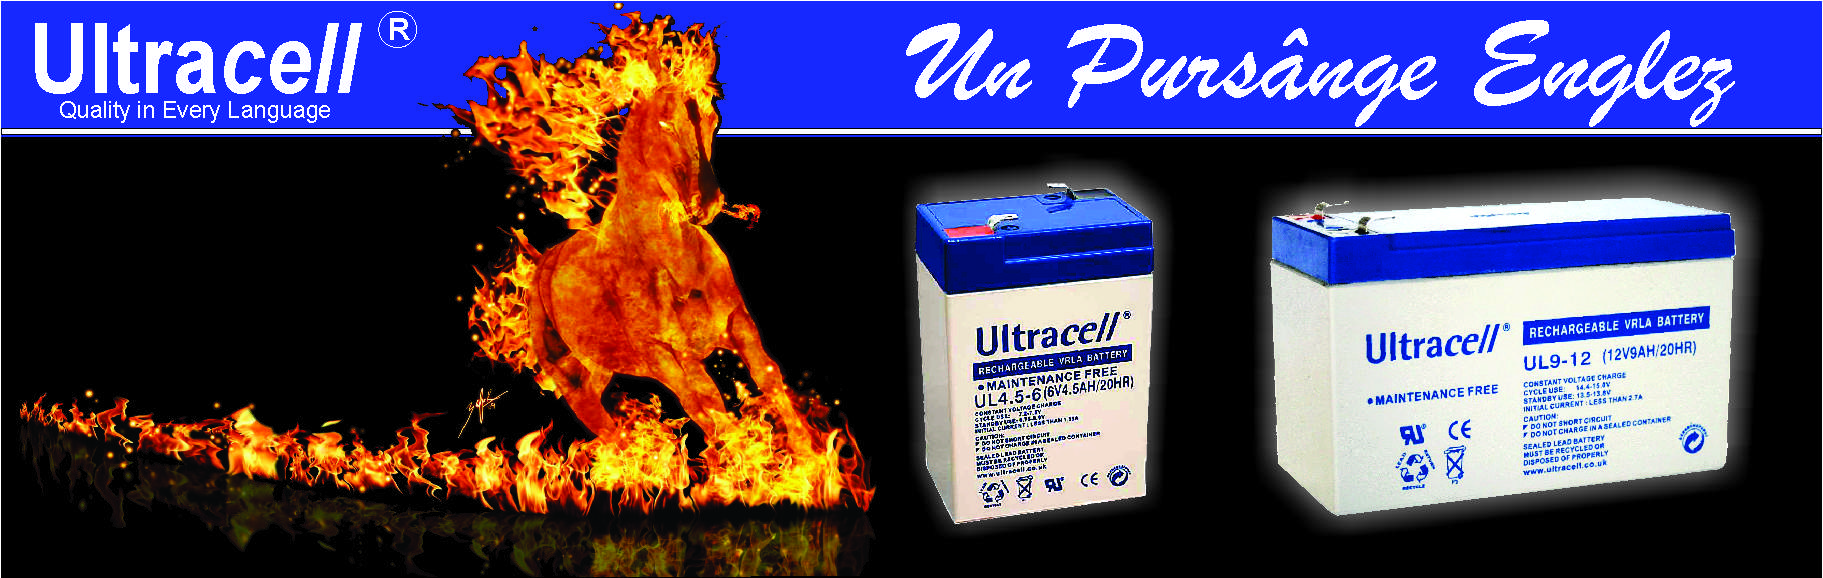 Ultracell - Brand mondial englez.